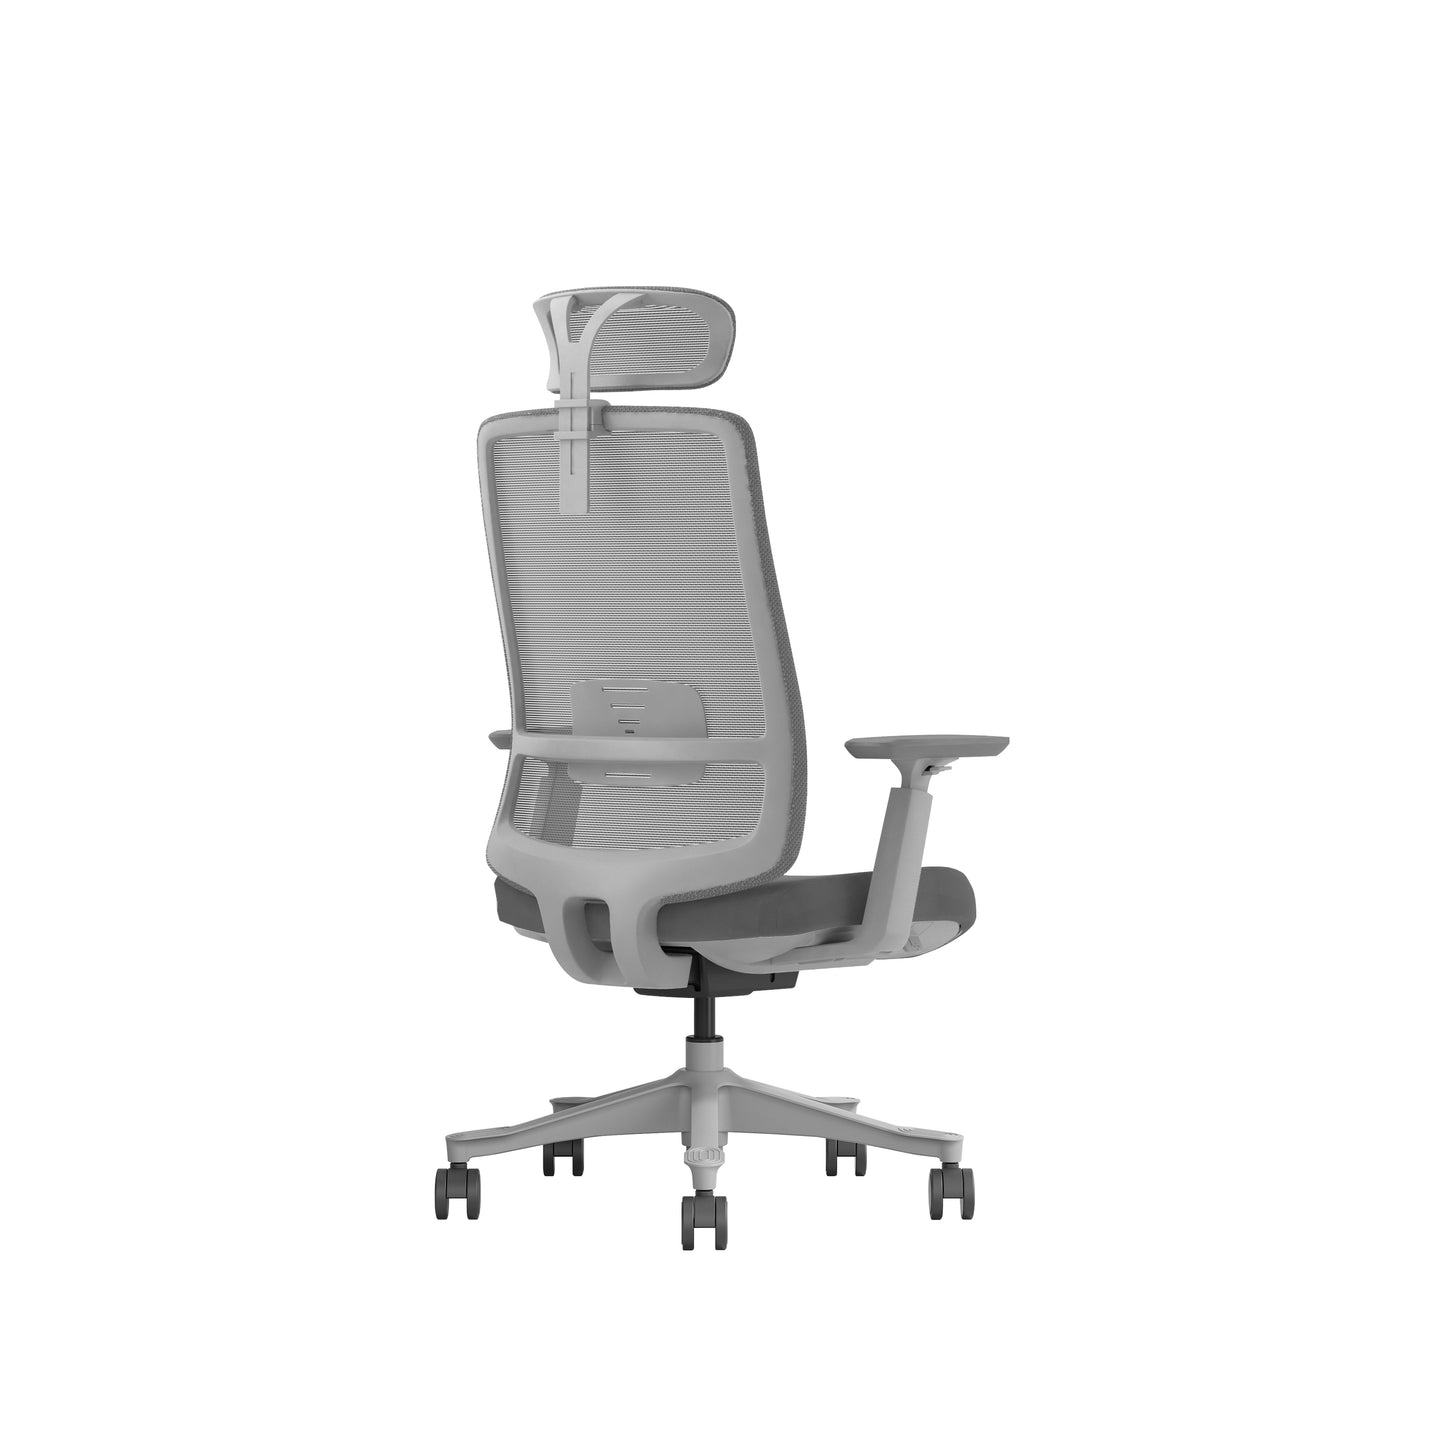 EKOGTLY05-V1-GH-02 High back with headrest Office Chair